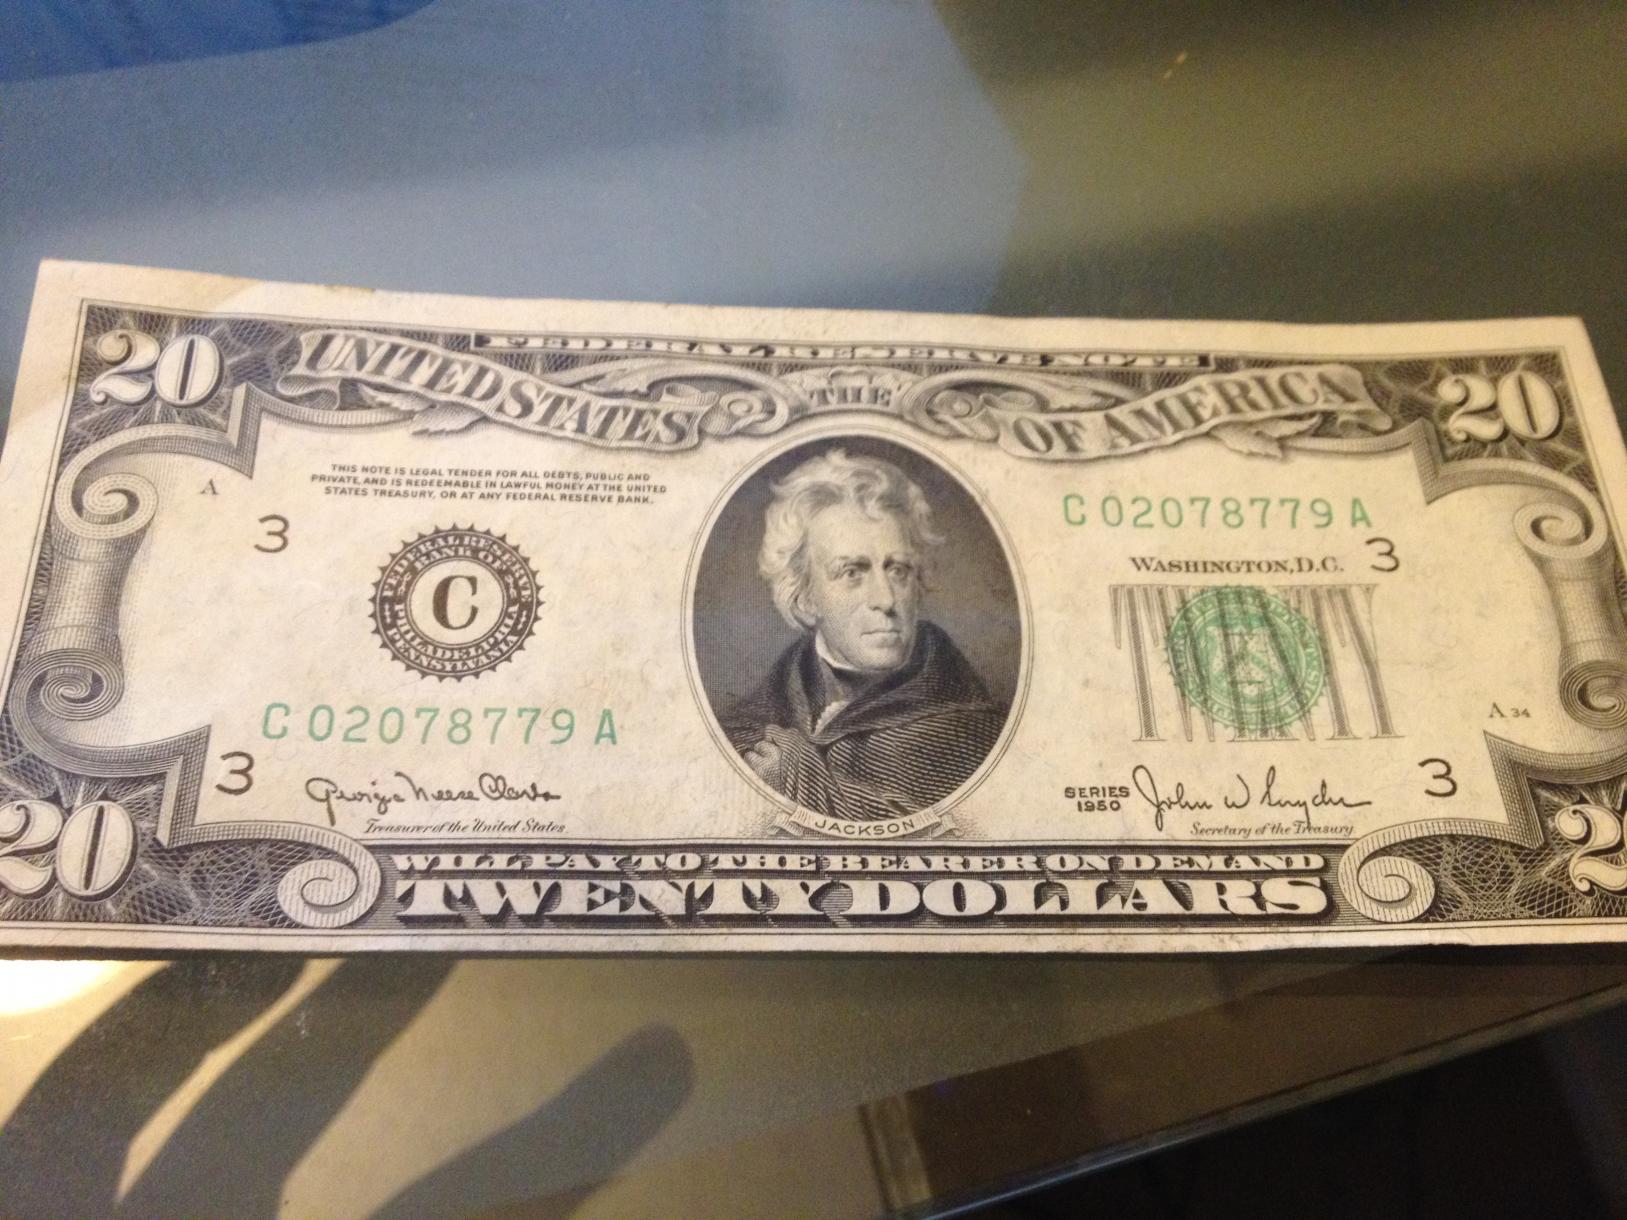 1950 Series $20 Bill Worth | Coin Talk